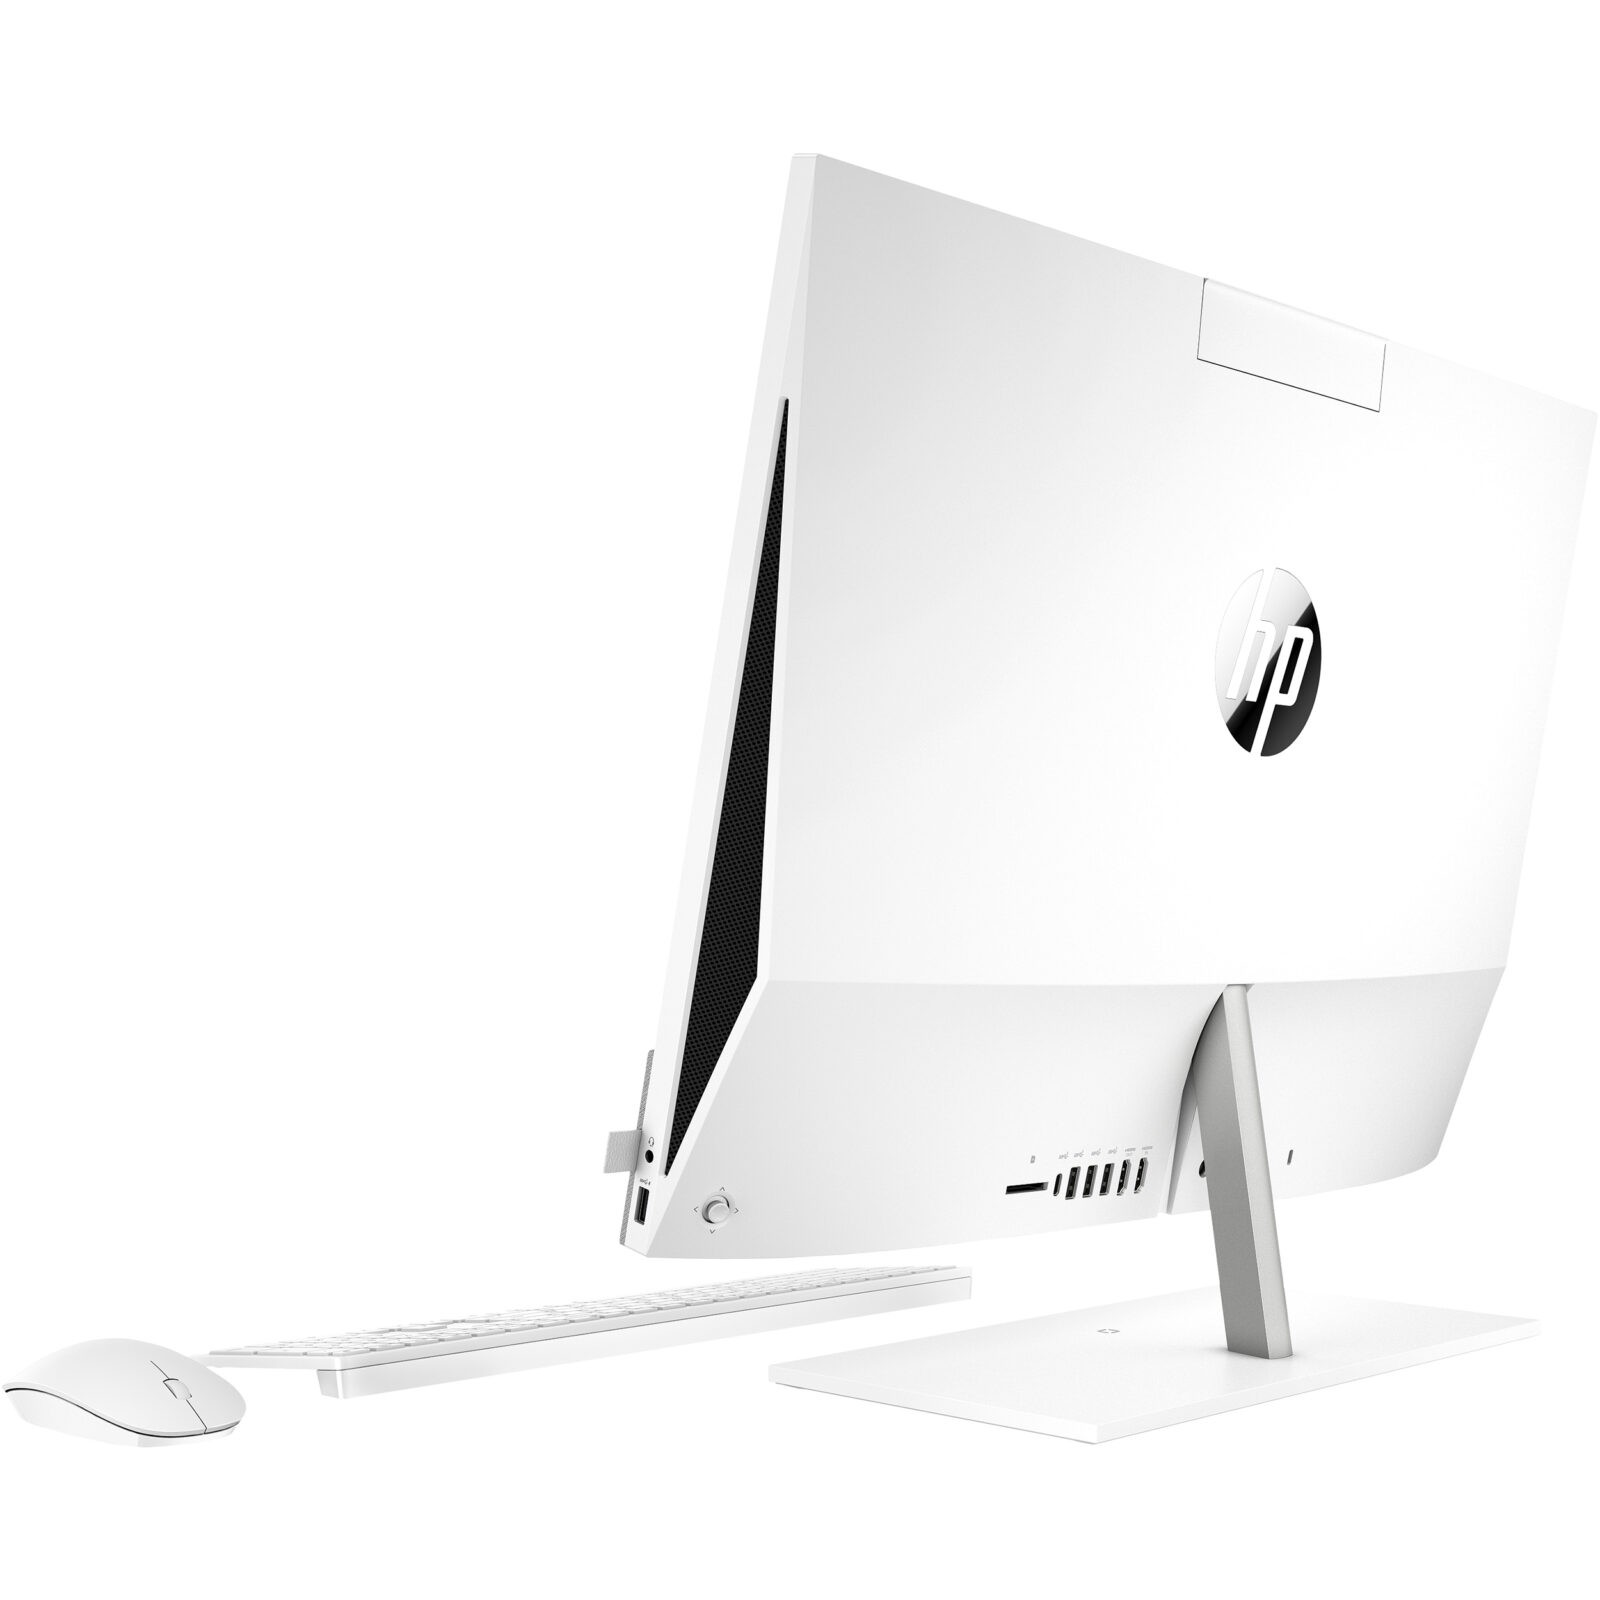 کامپیوتر همه کاره 27 اینچی اپل مدل iMac MXWT2 2020 با صفحه نمایش رتینا 5K